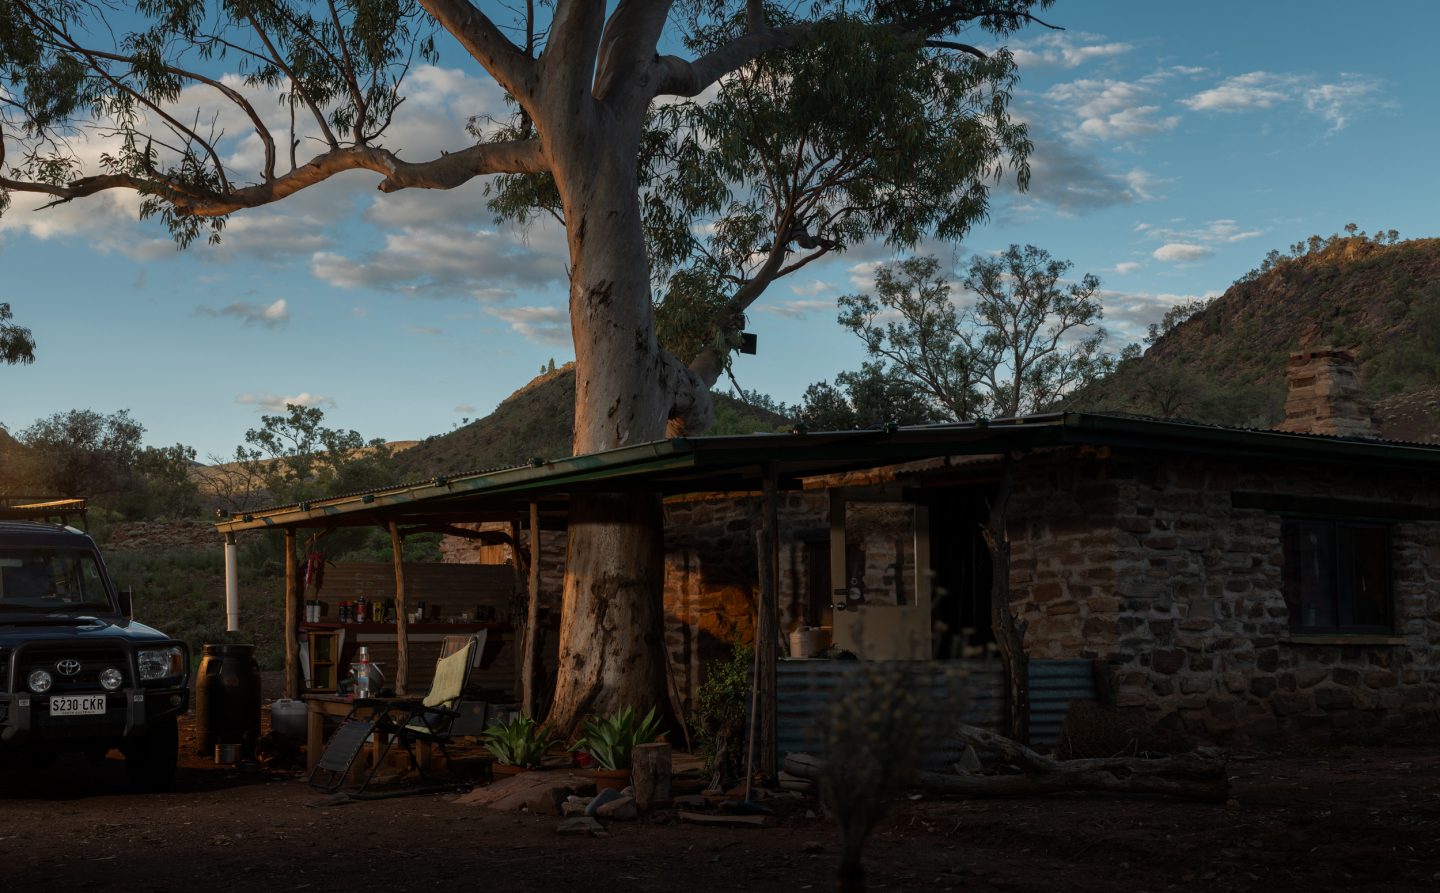 Bush camp outside of Blinman in the Flinders Rangers